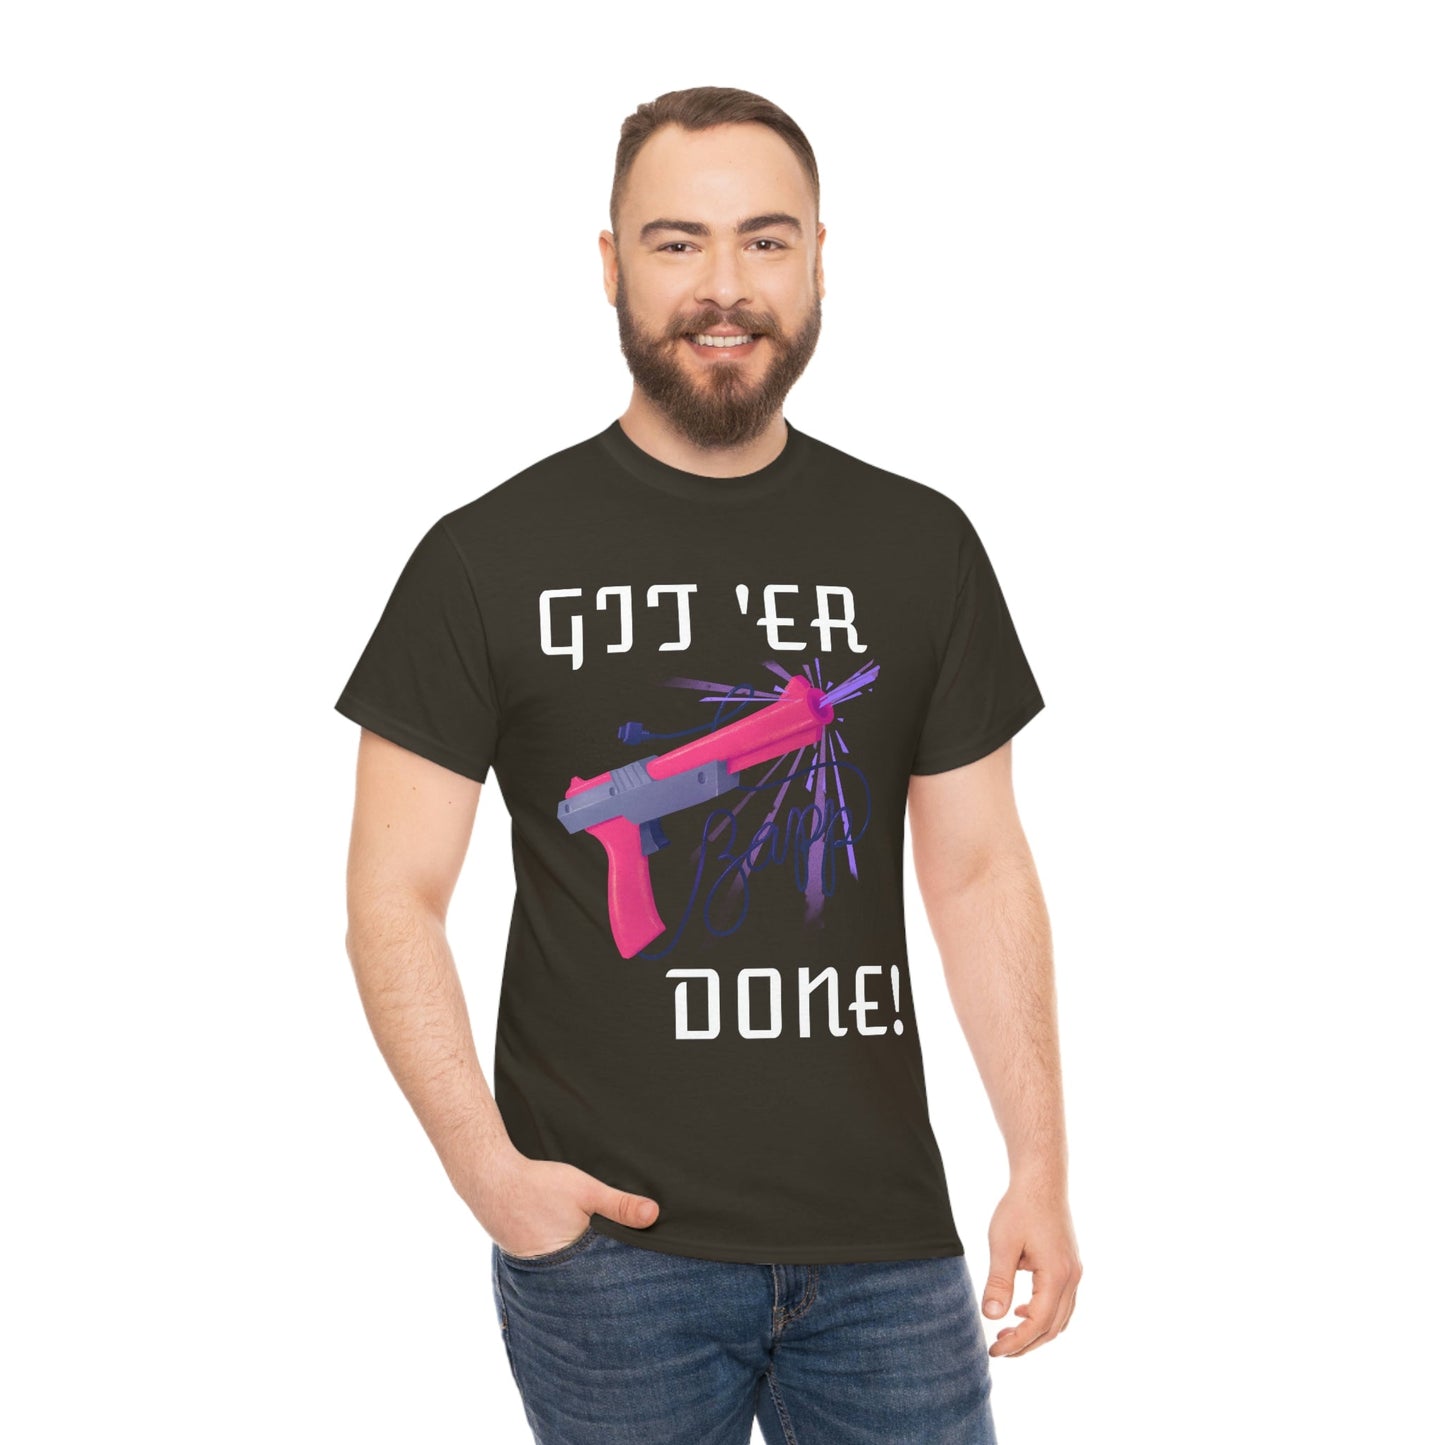 Classic Gamer - Git 'er Done Unisex T-Shirt - Albasat Designs